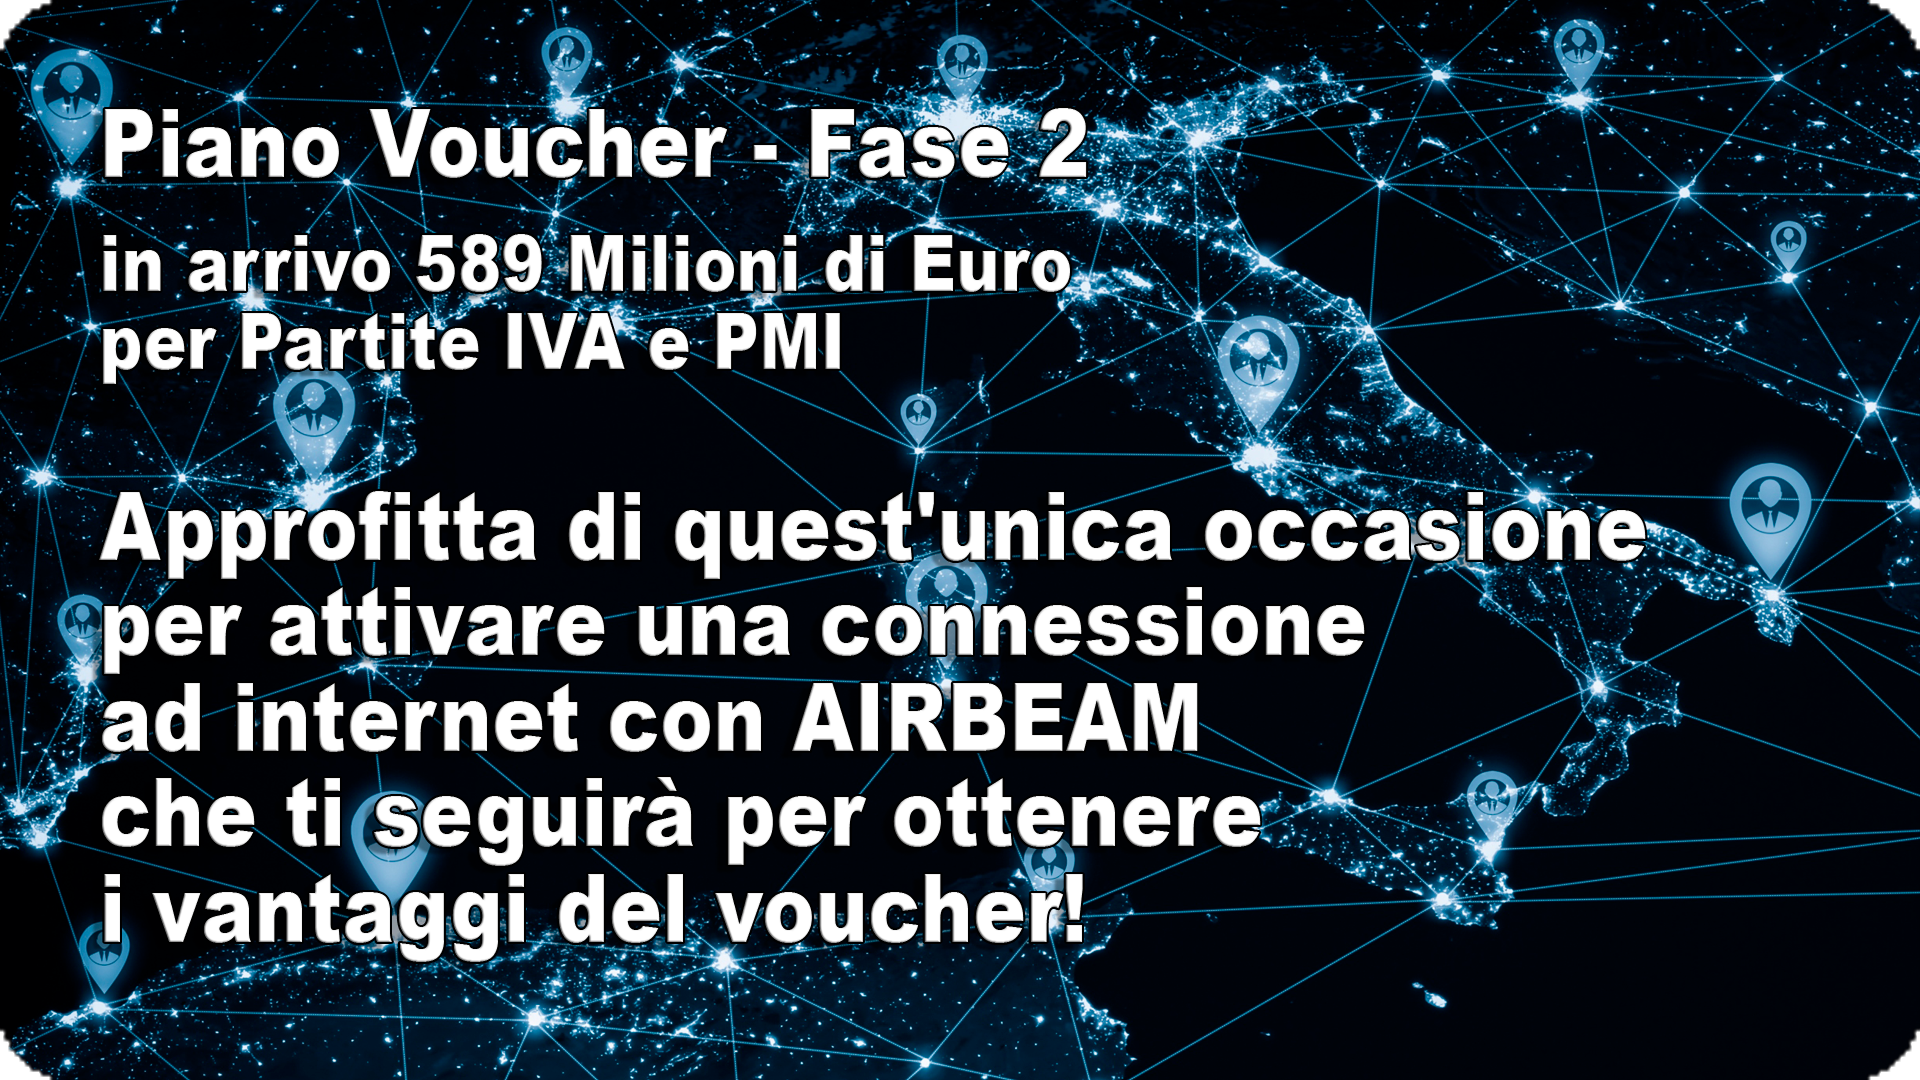 Airbeam - Voucher Fase 2